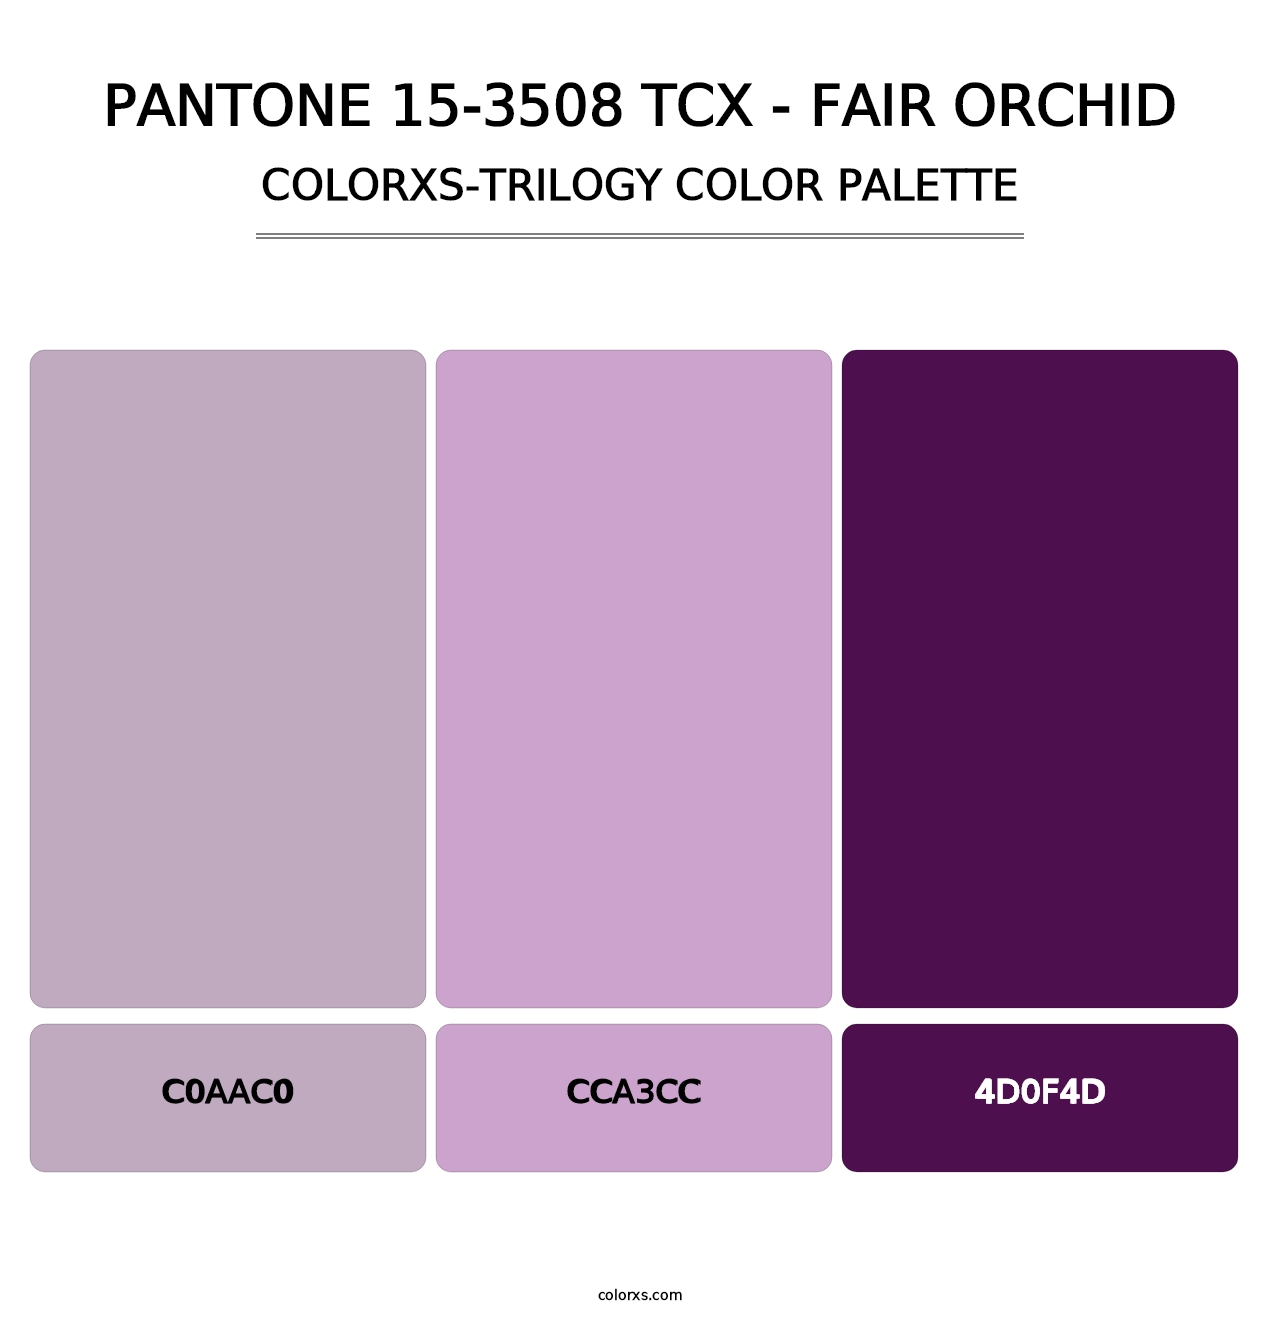 PANTONE 15-3508 TCX - Fair Orchid - Colorxs Trilogy Palette